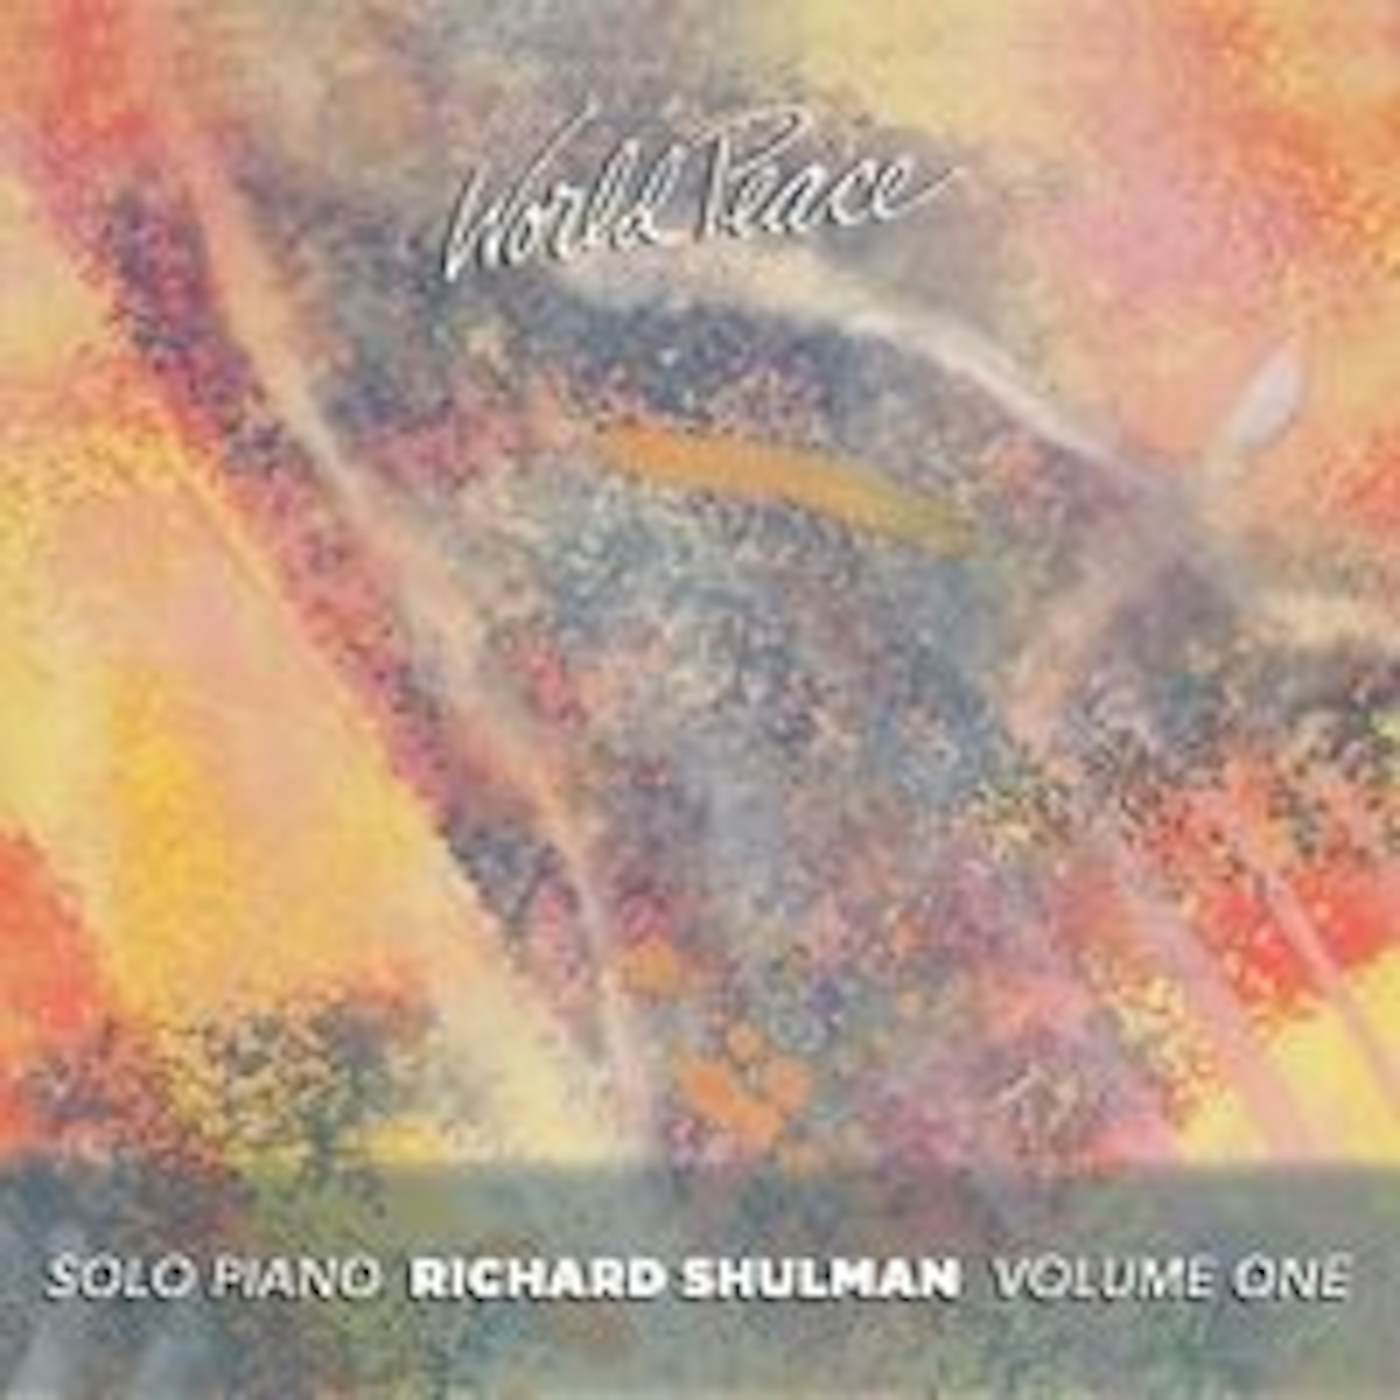 Richard Shulman WORLD PEACE 1 CD